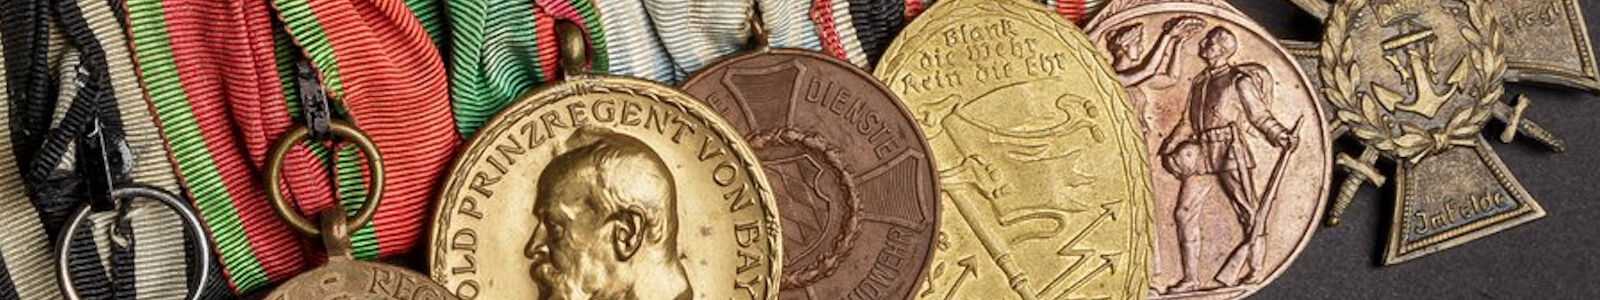 Médailles internationales et objets de collection historiques militaires